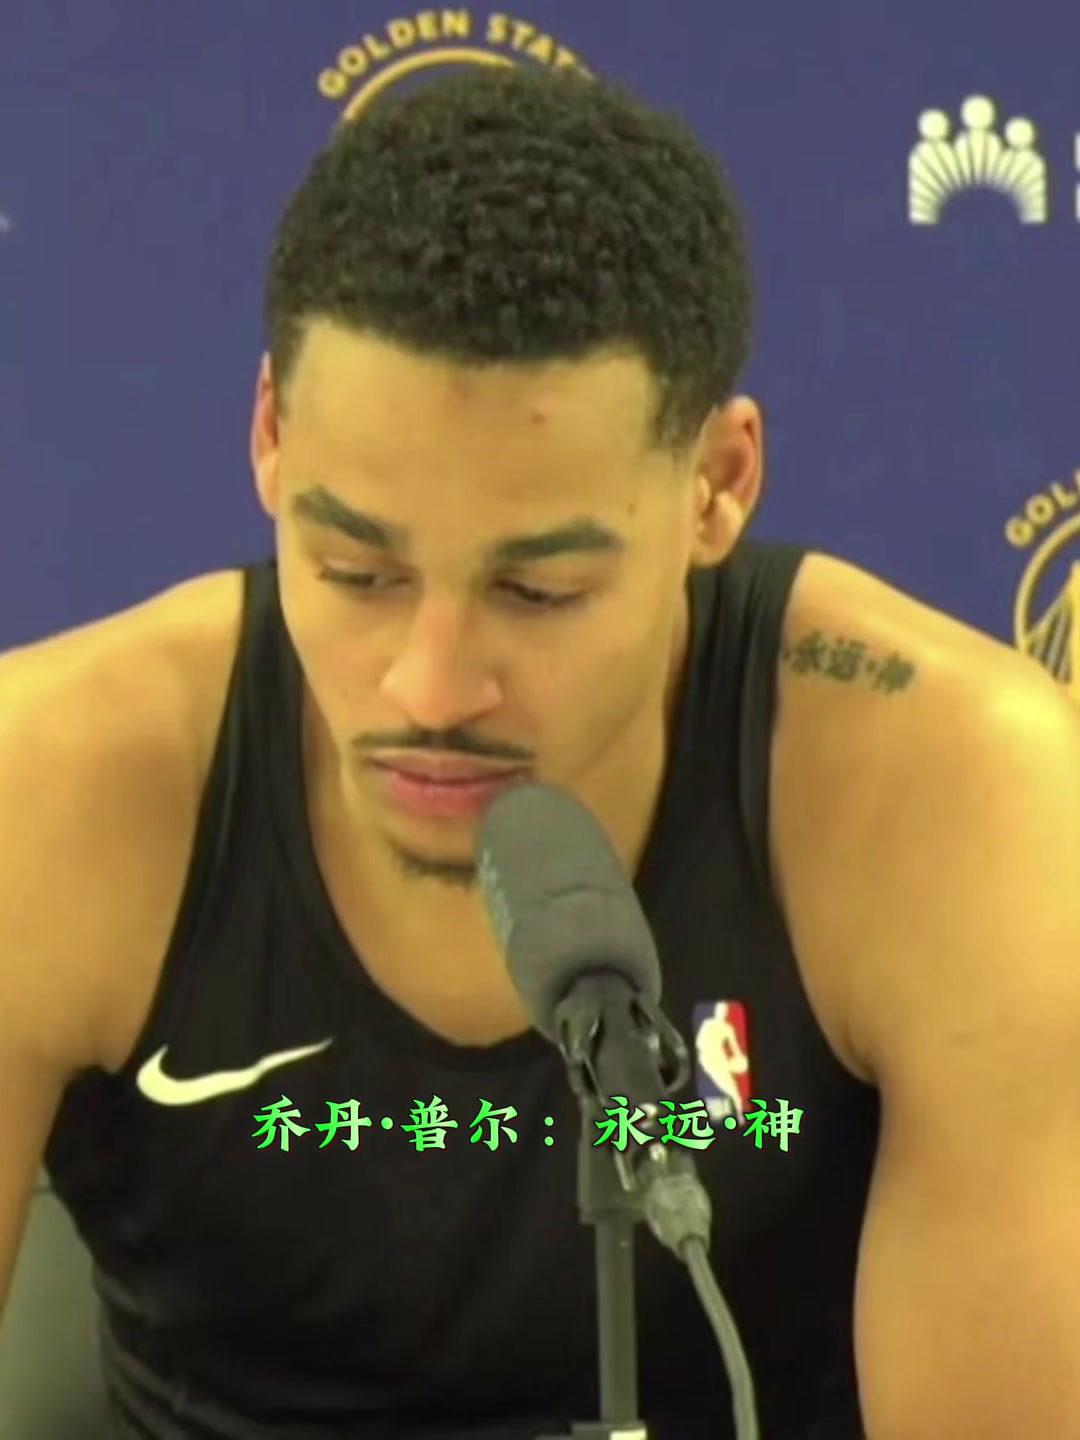 拥有汉字纹身的NBA球员！竟然有人纹“可以”两个字